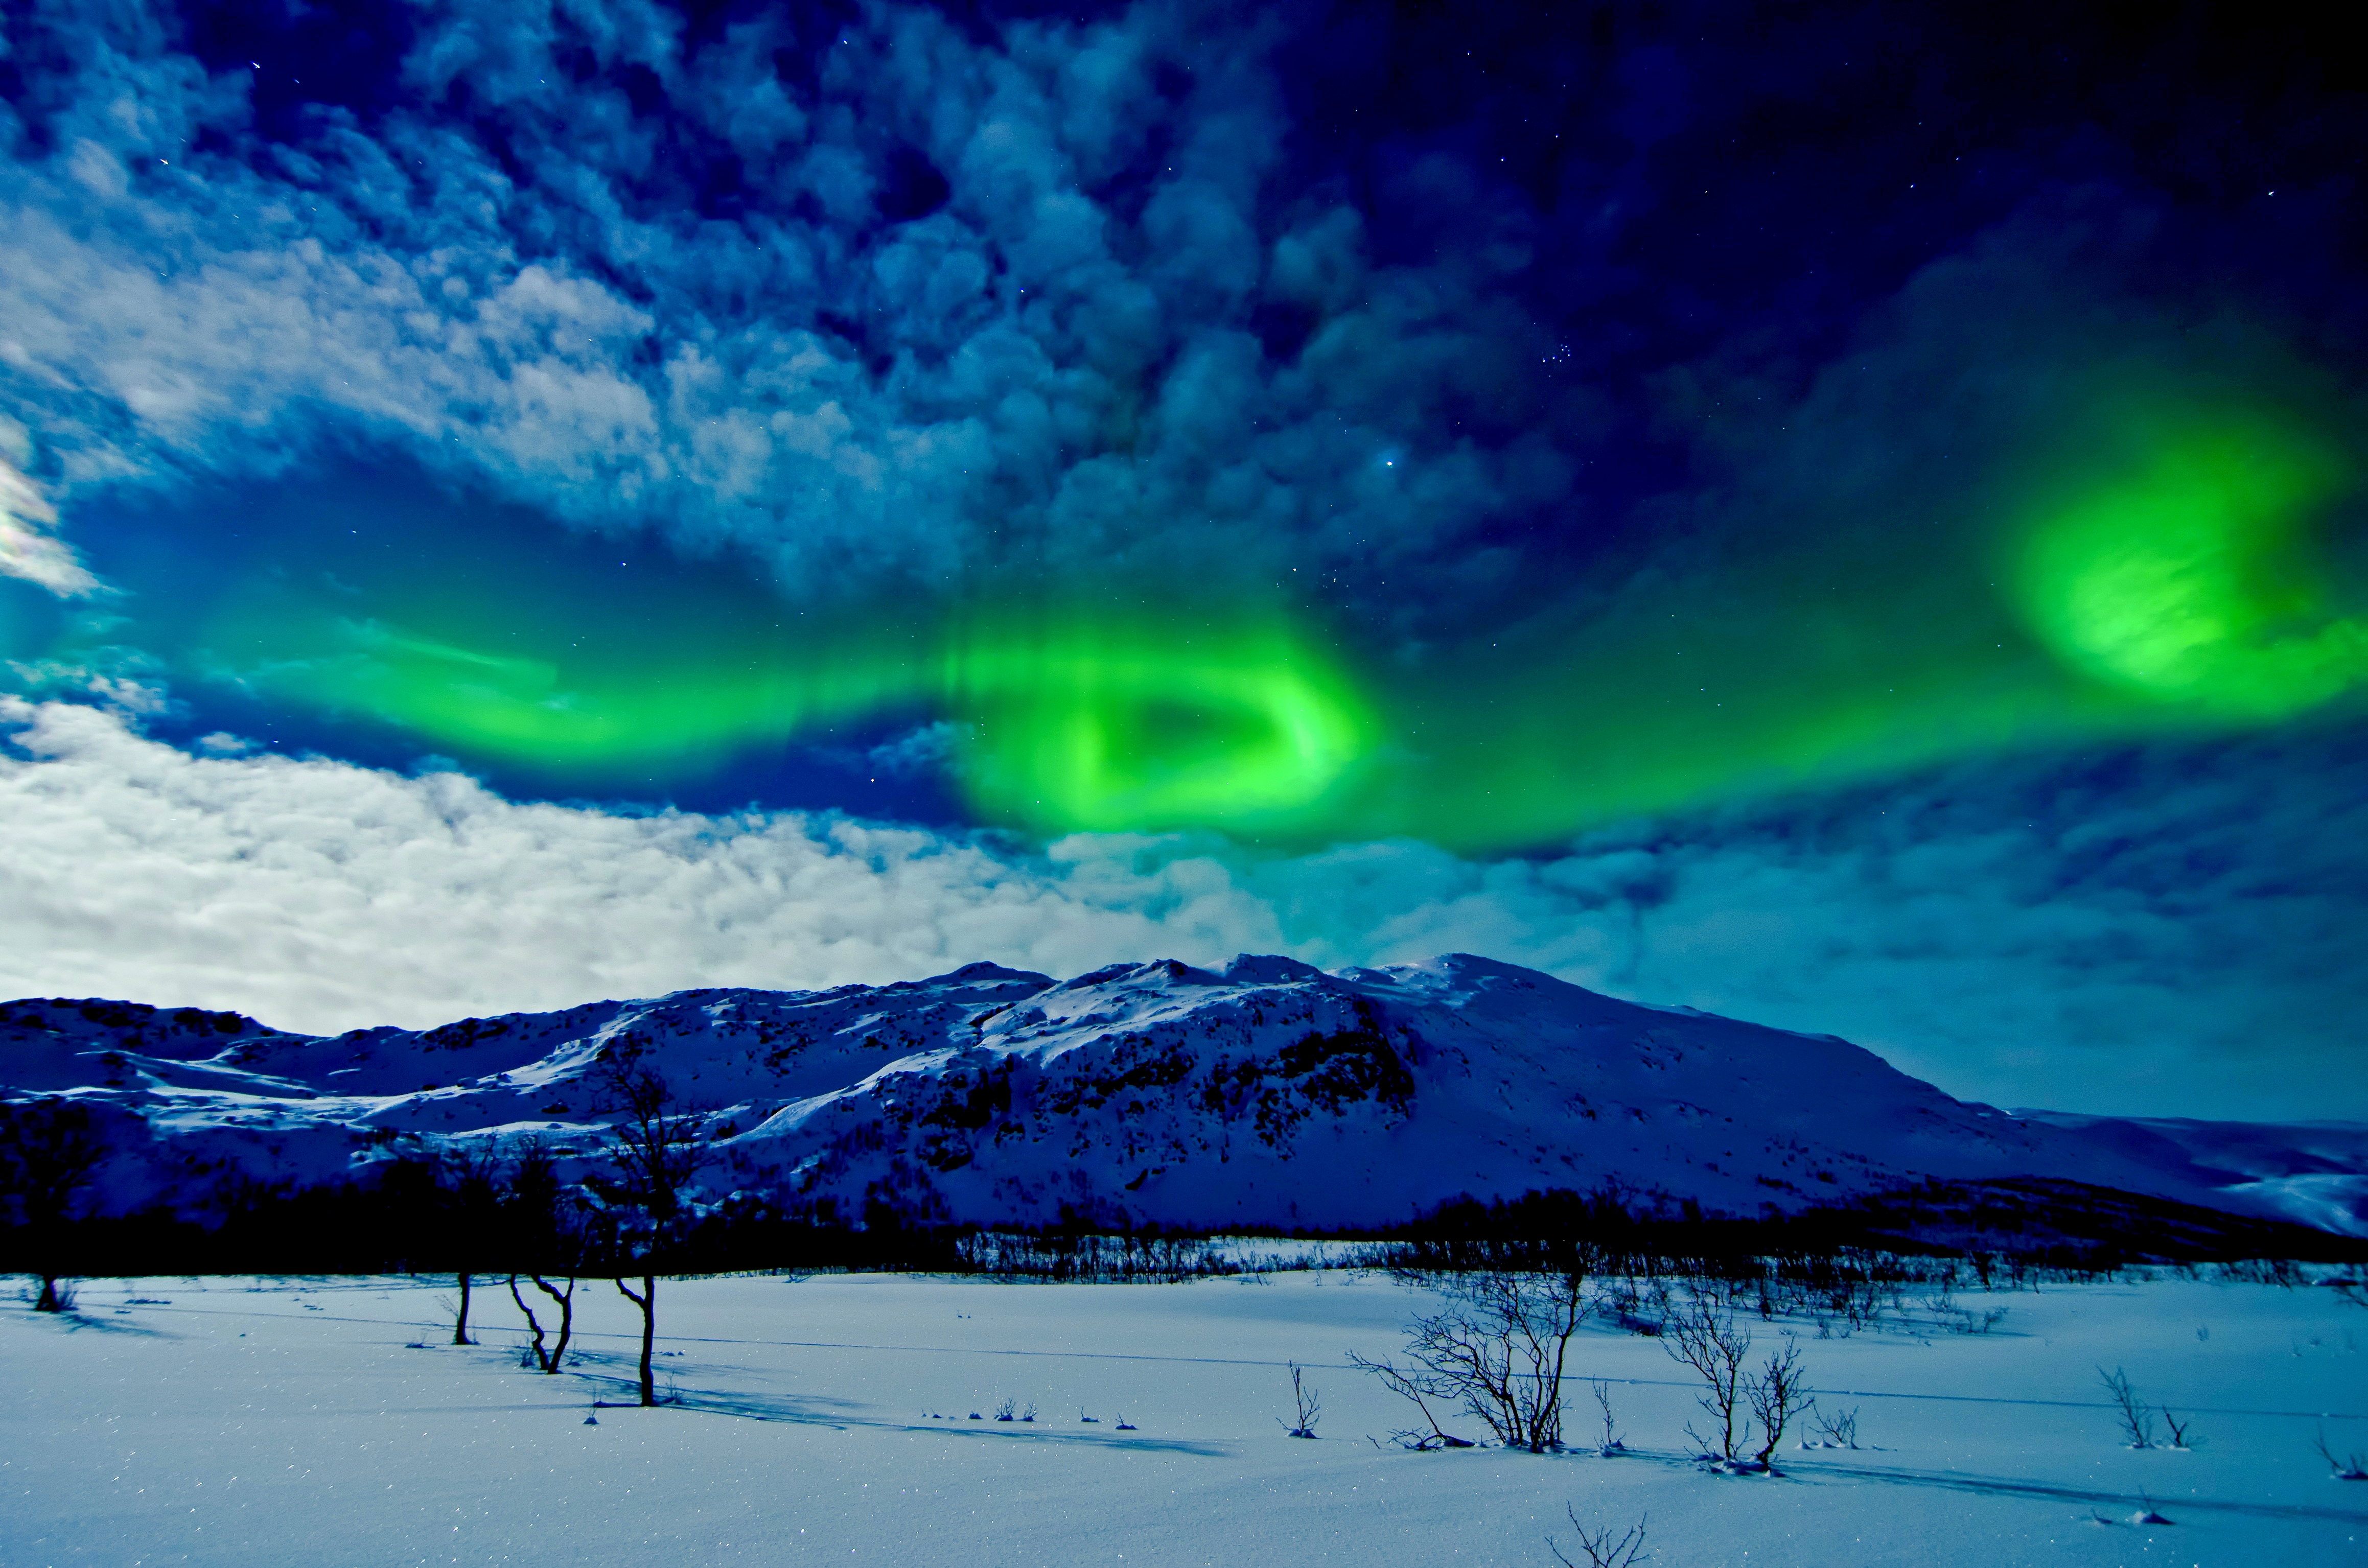 Aurora Borealis over Winter Mountains